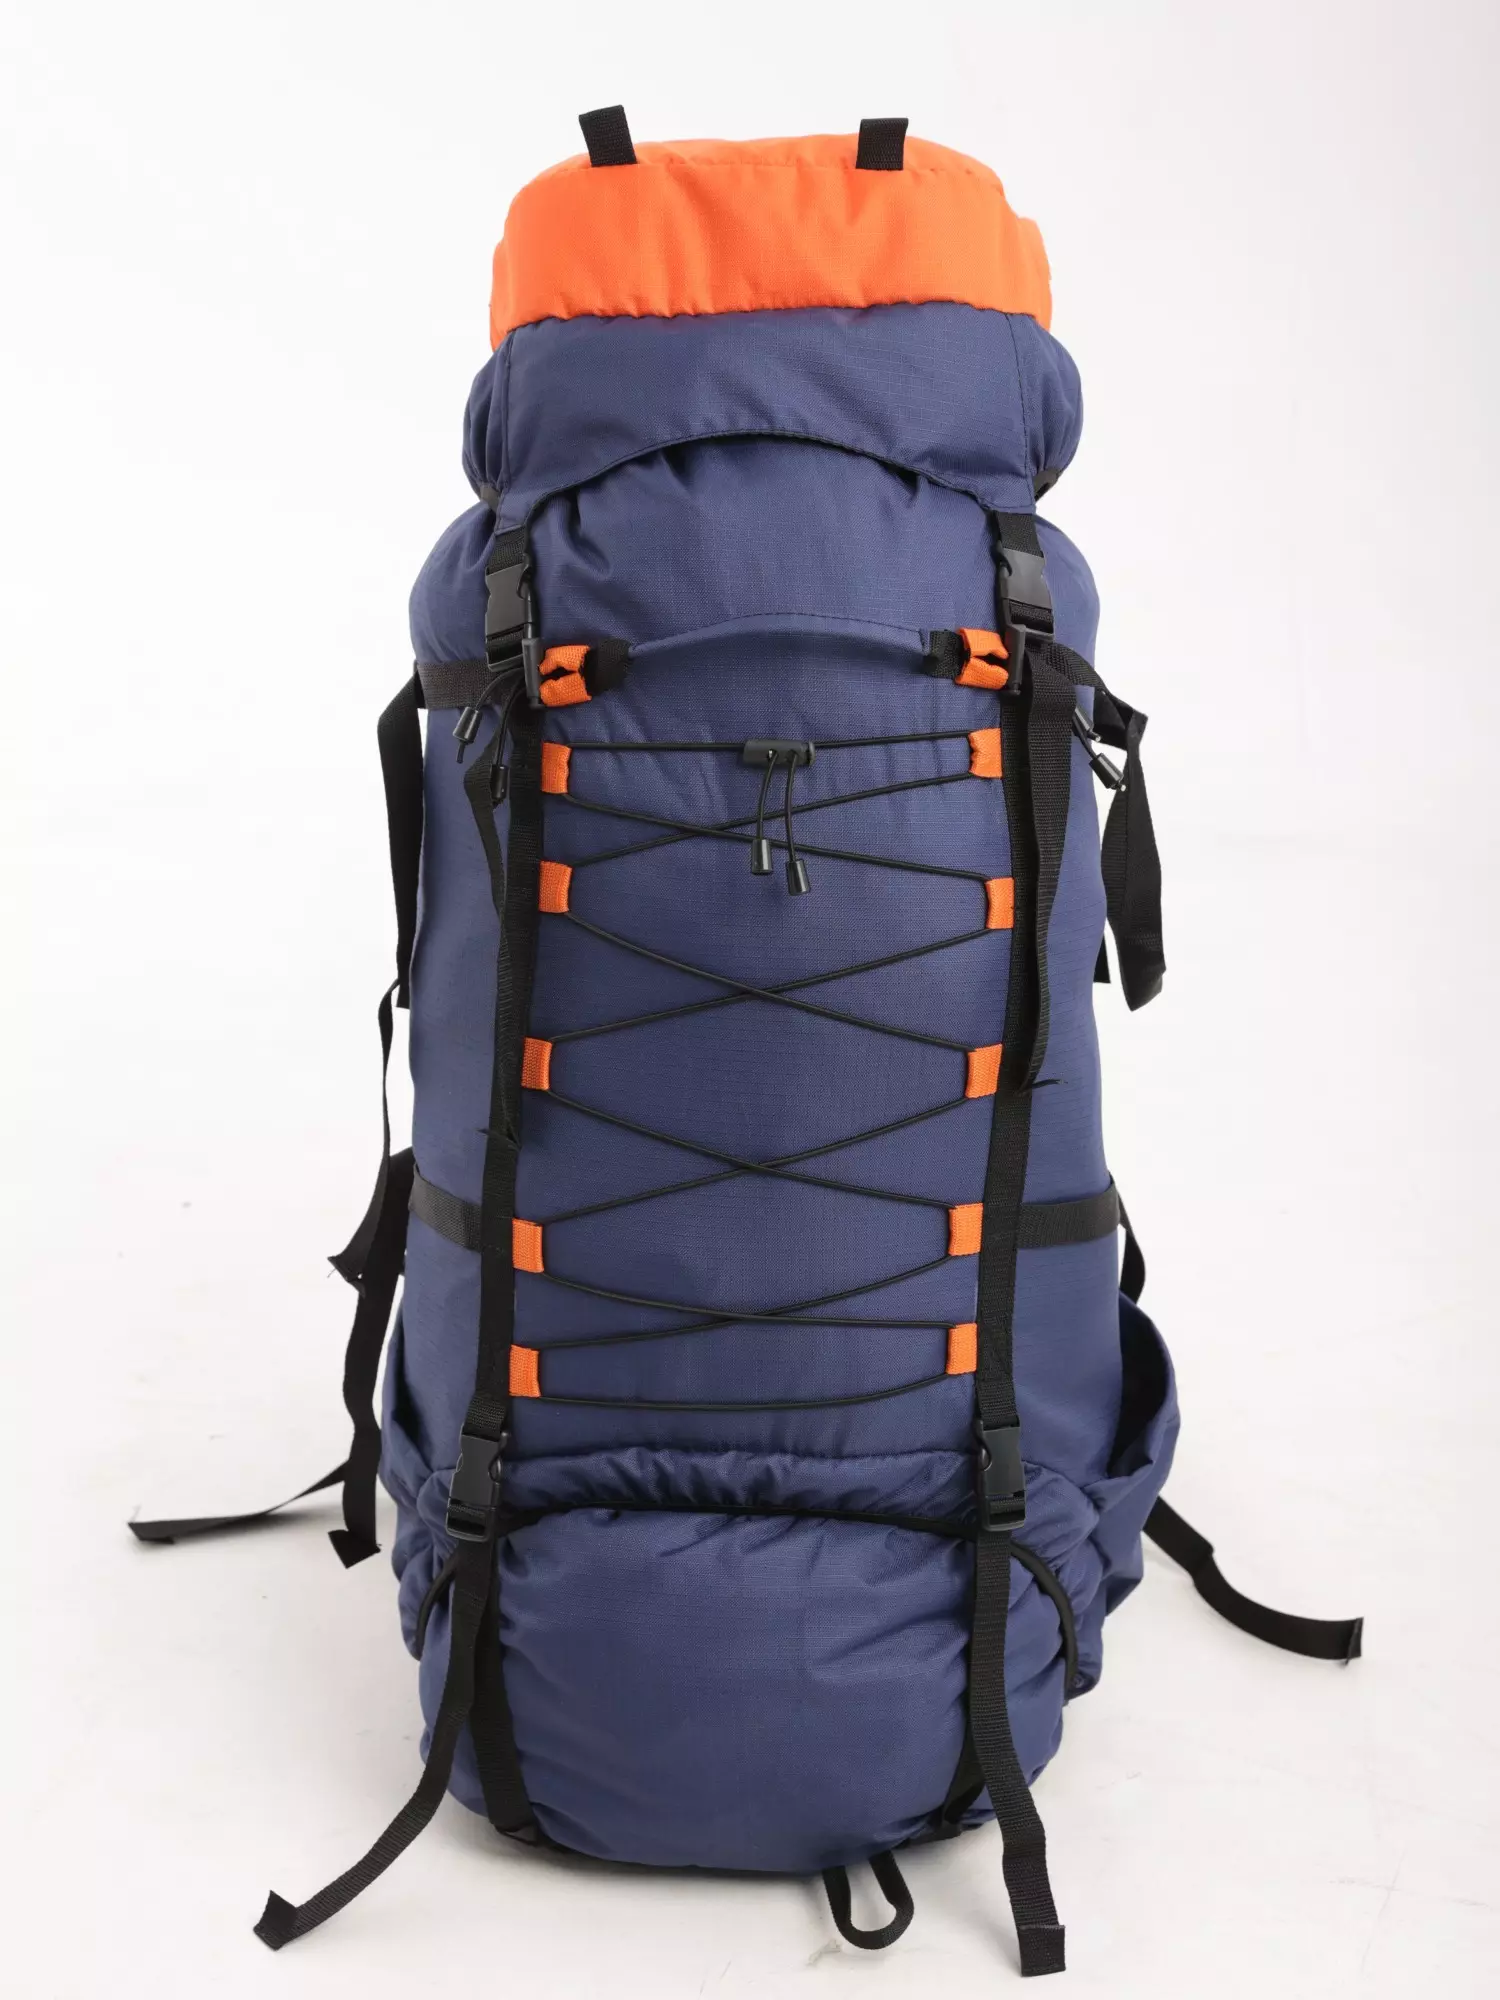 Рюкзак туристический Белый камень Спасатель 100 л оксфорд 600D ПУ сине-оранжевый